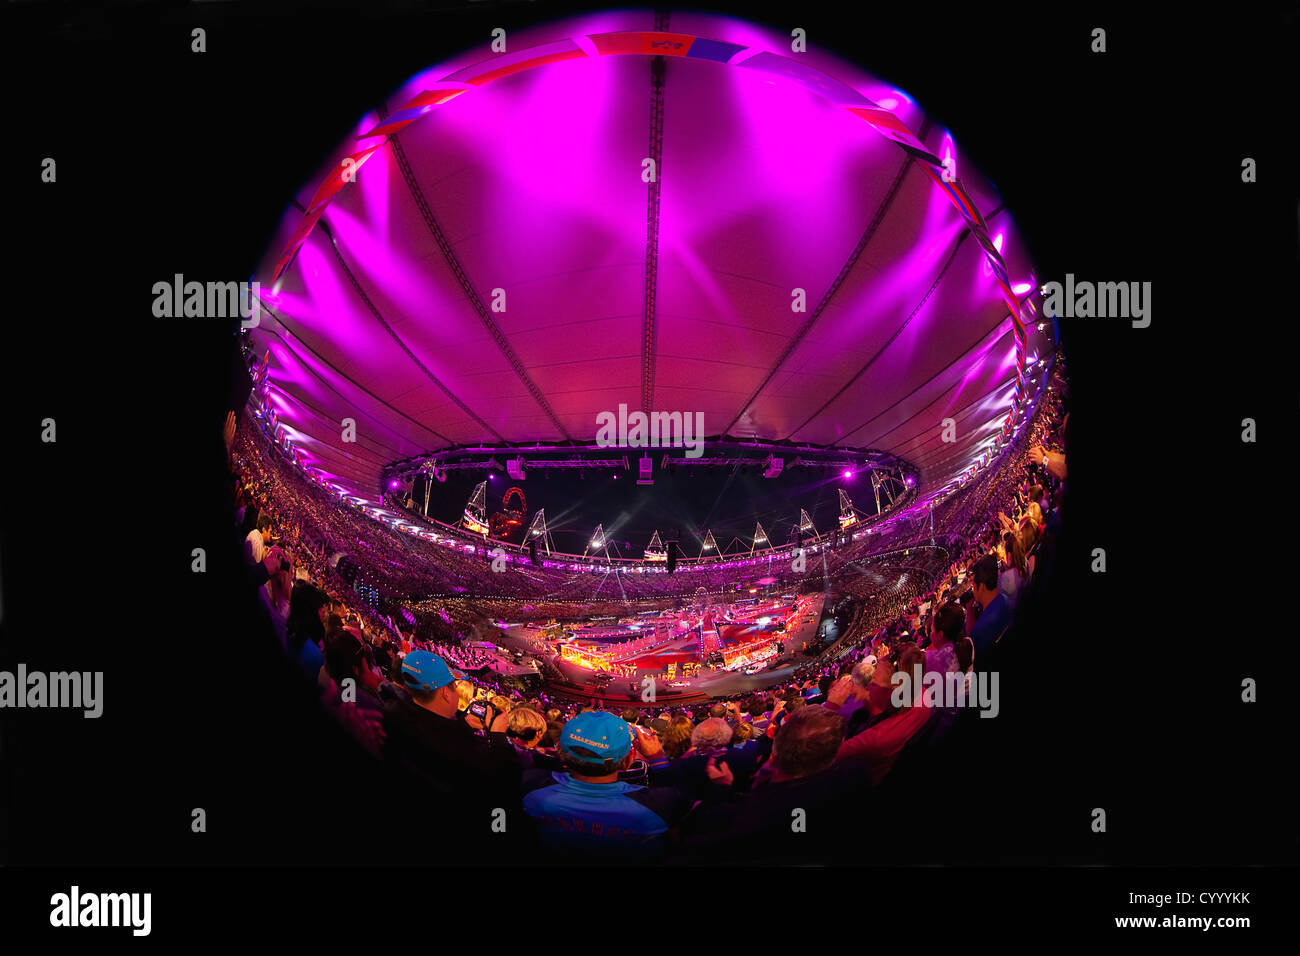 Inghilterra, Londra, Stratford, obiettivo Fisheye vista di giochi olimpici cerimonia di chiusura con il pubblico in Stadium e luce rosa display. Foto Stock